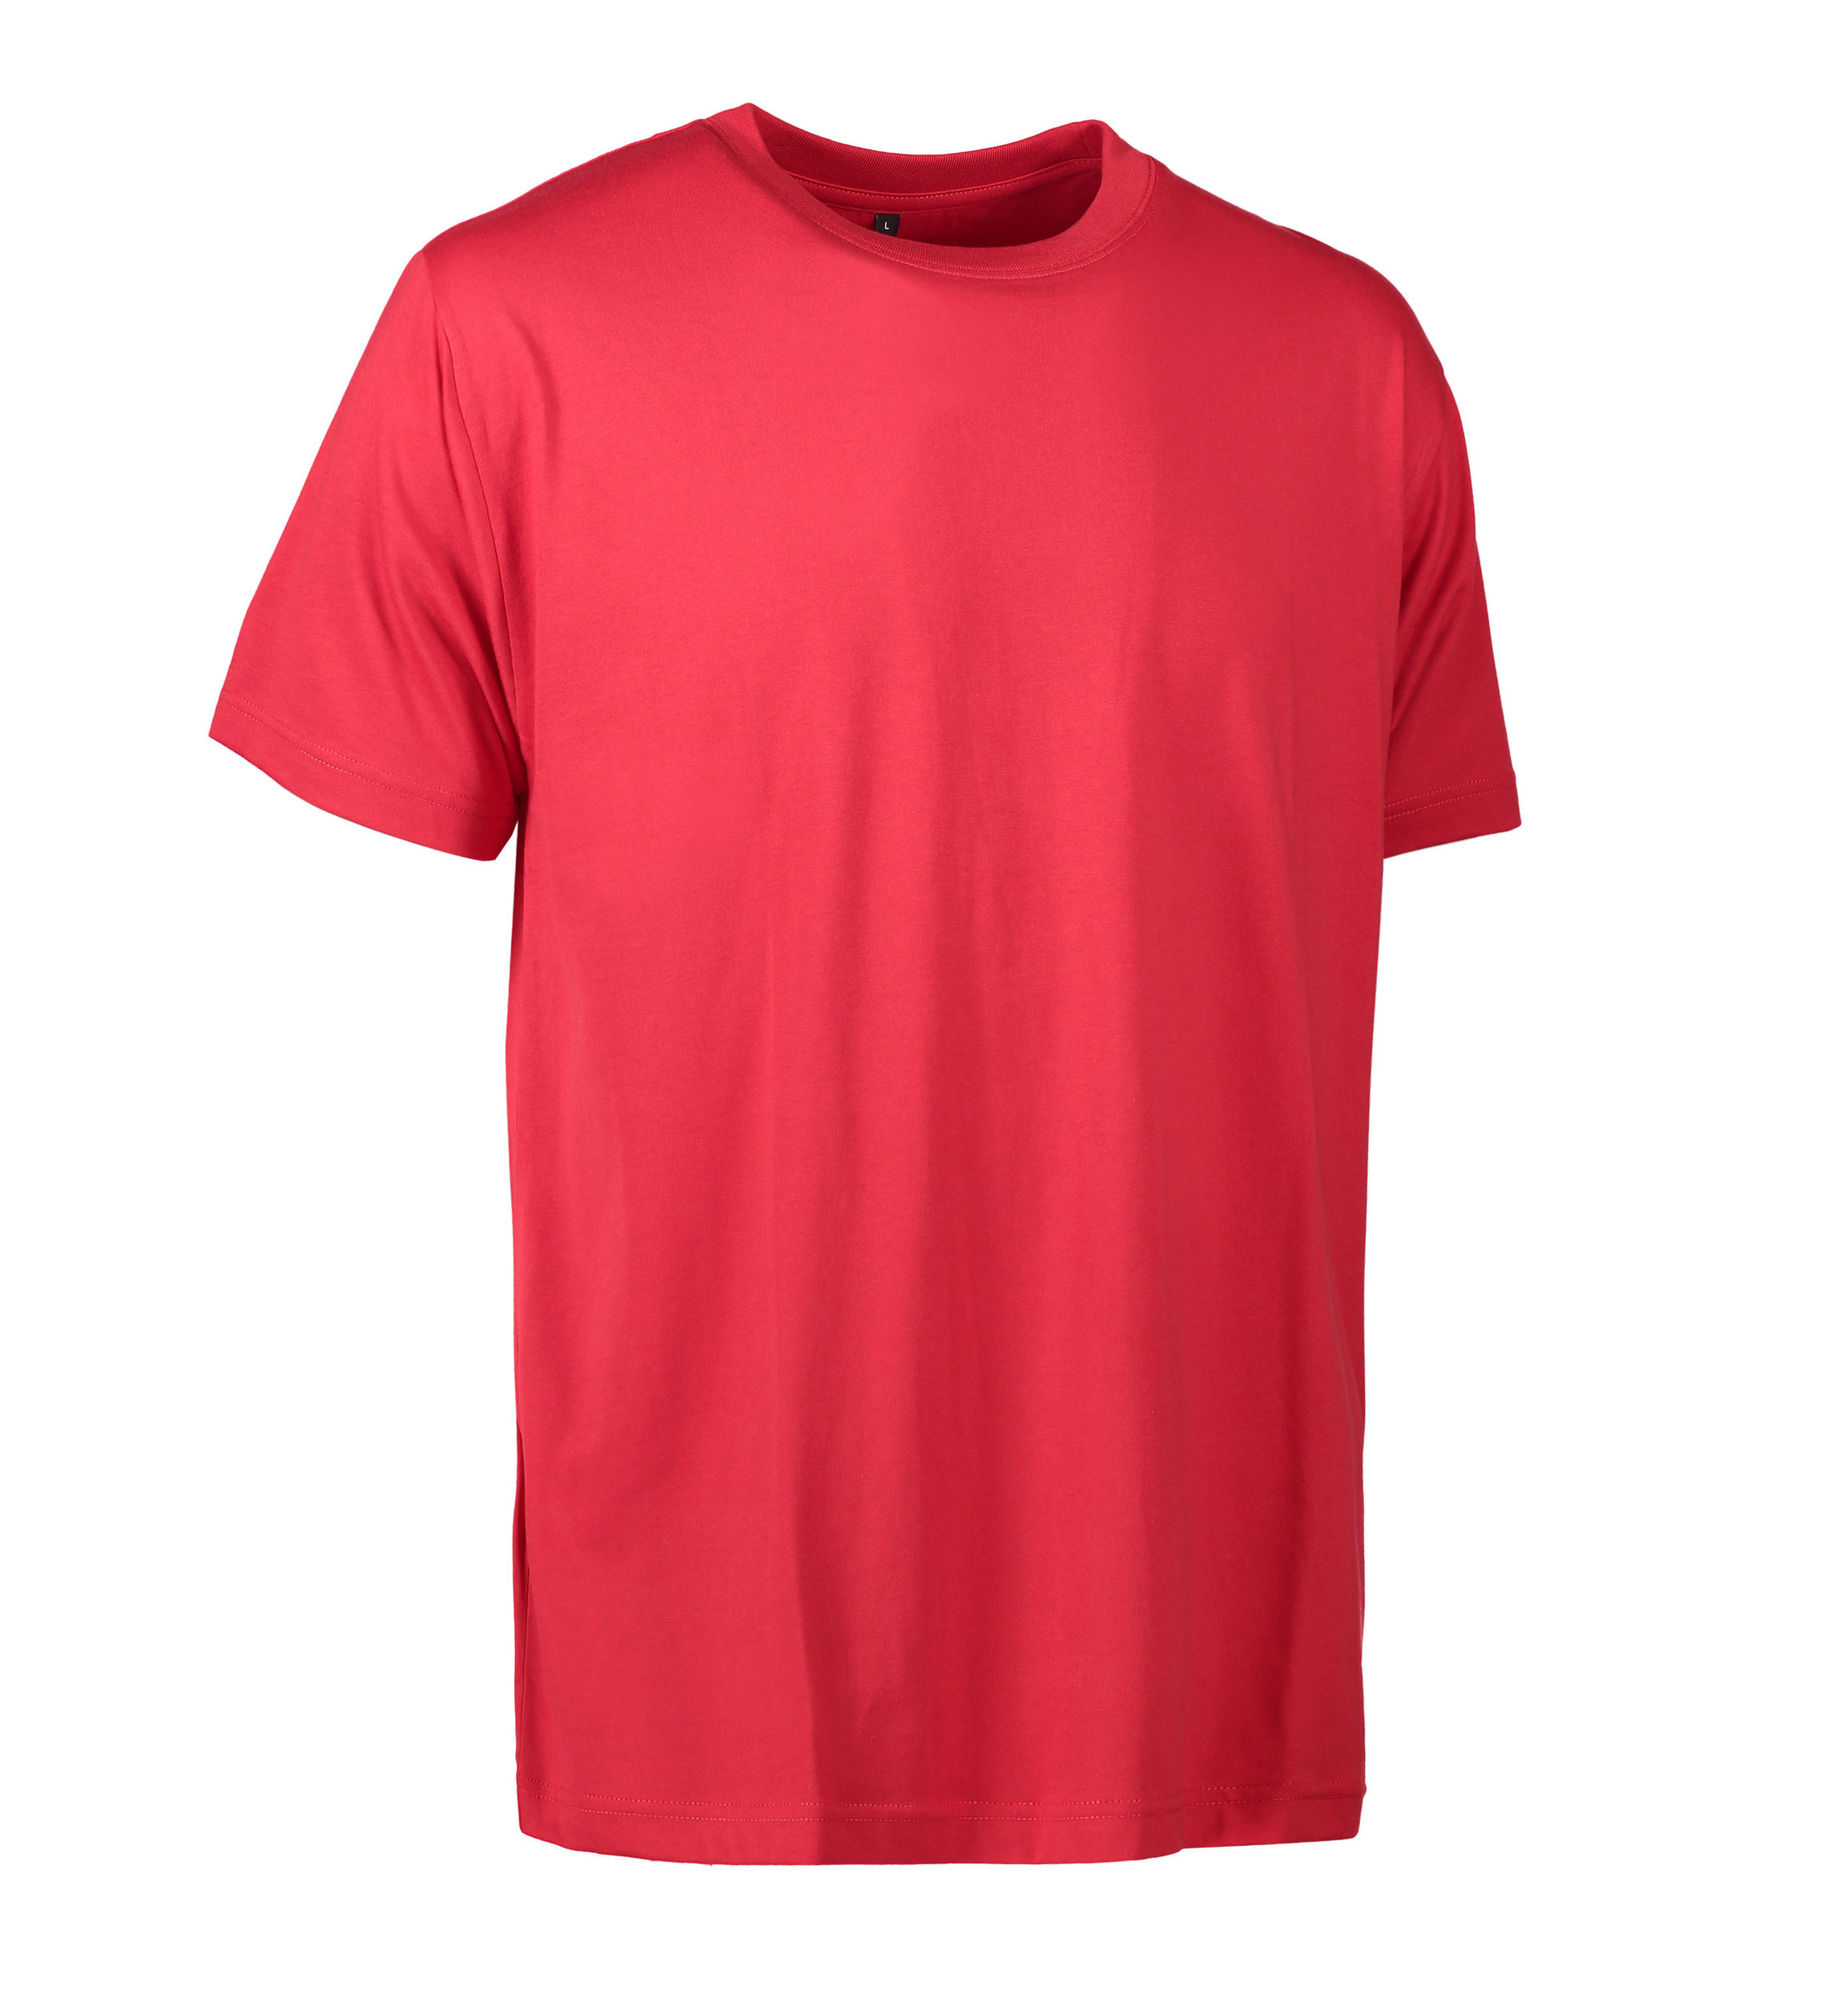 Se Slidstærk t-shirt i rød til mænd - 2XL hos Sygeplejebutikken.dk